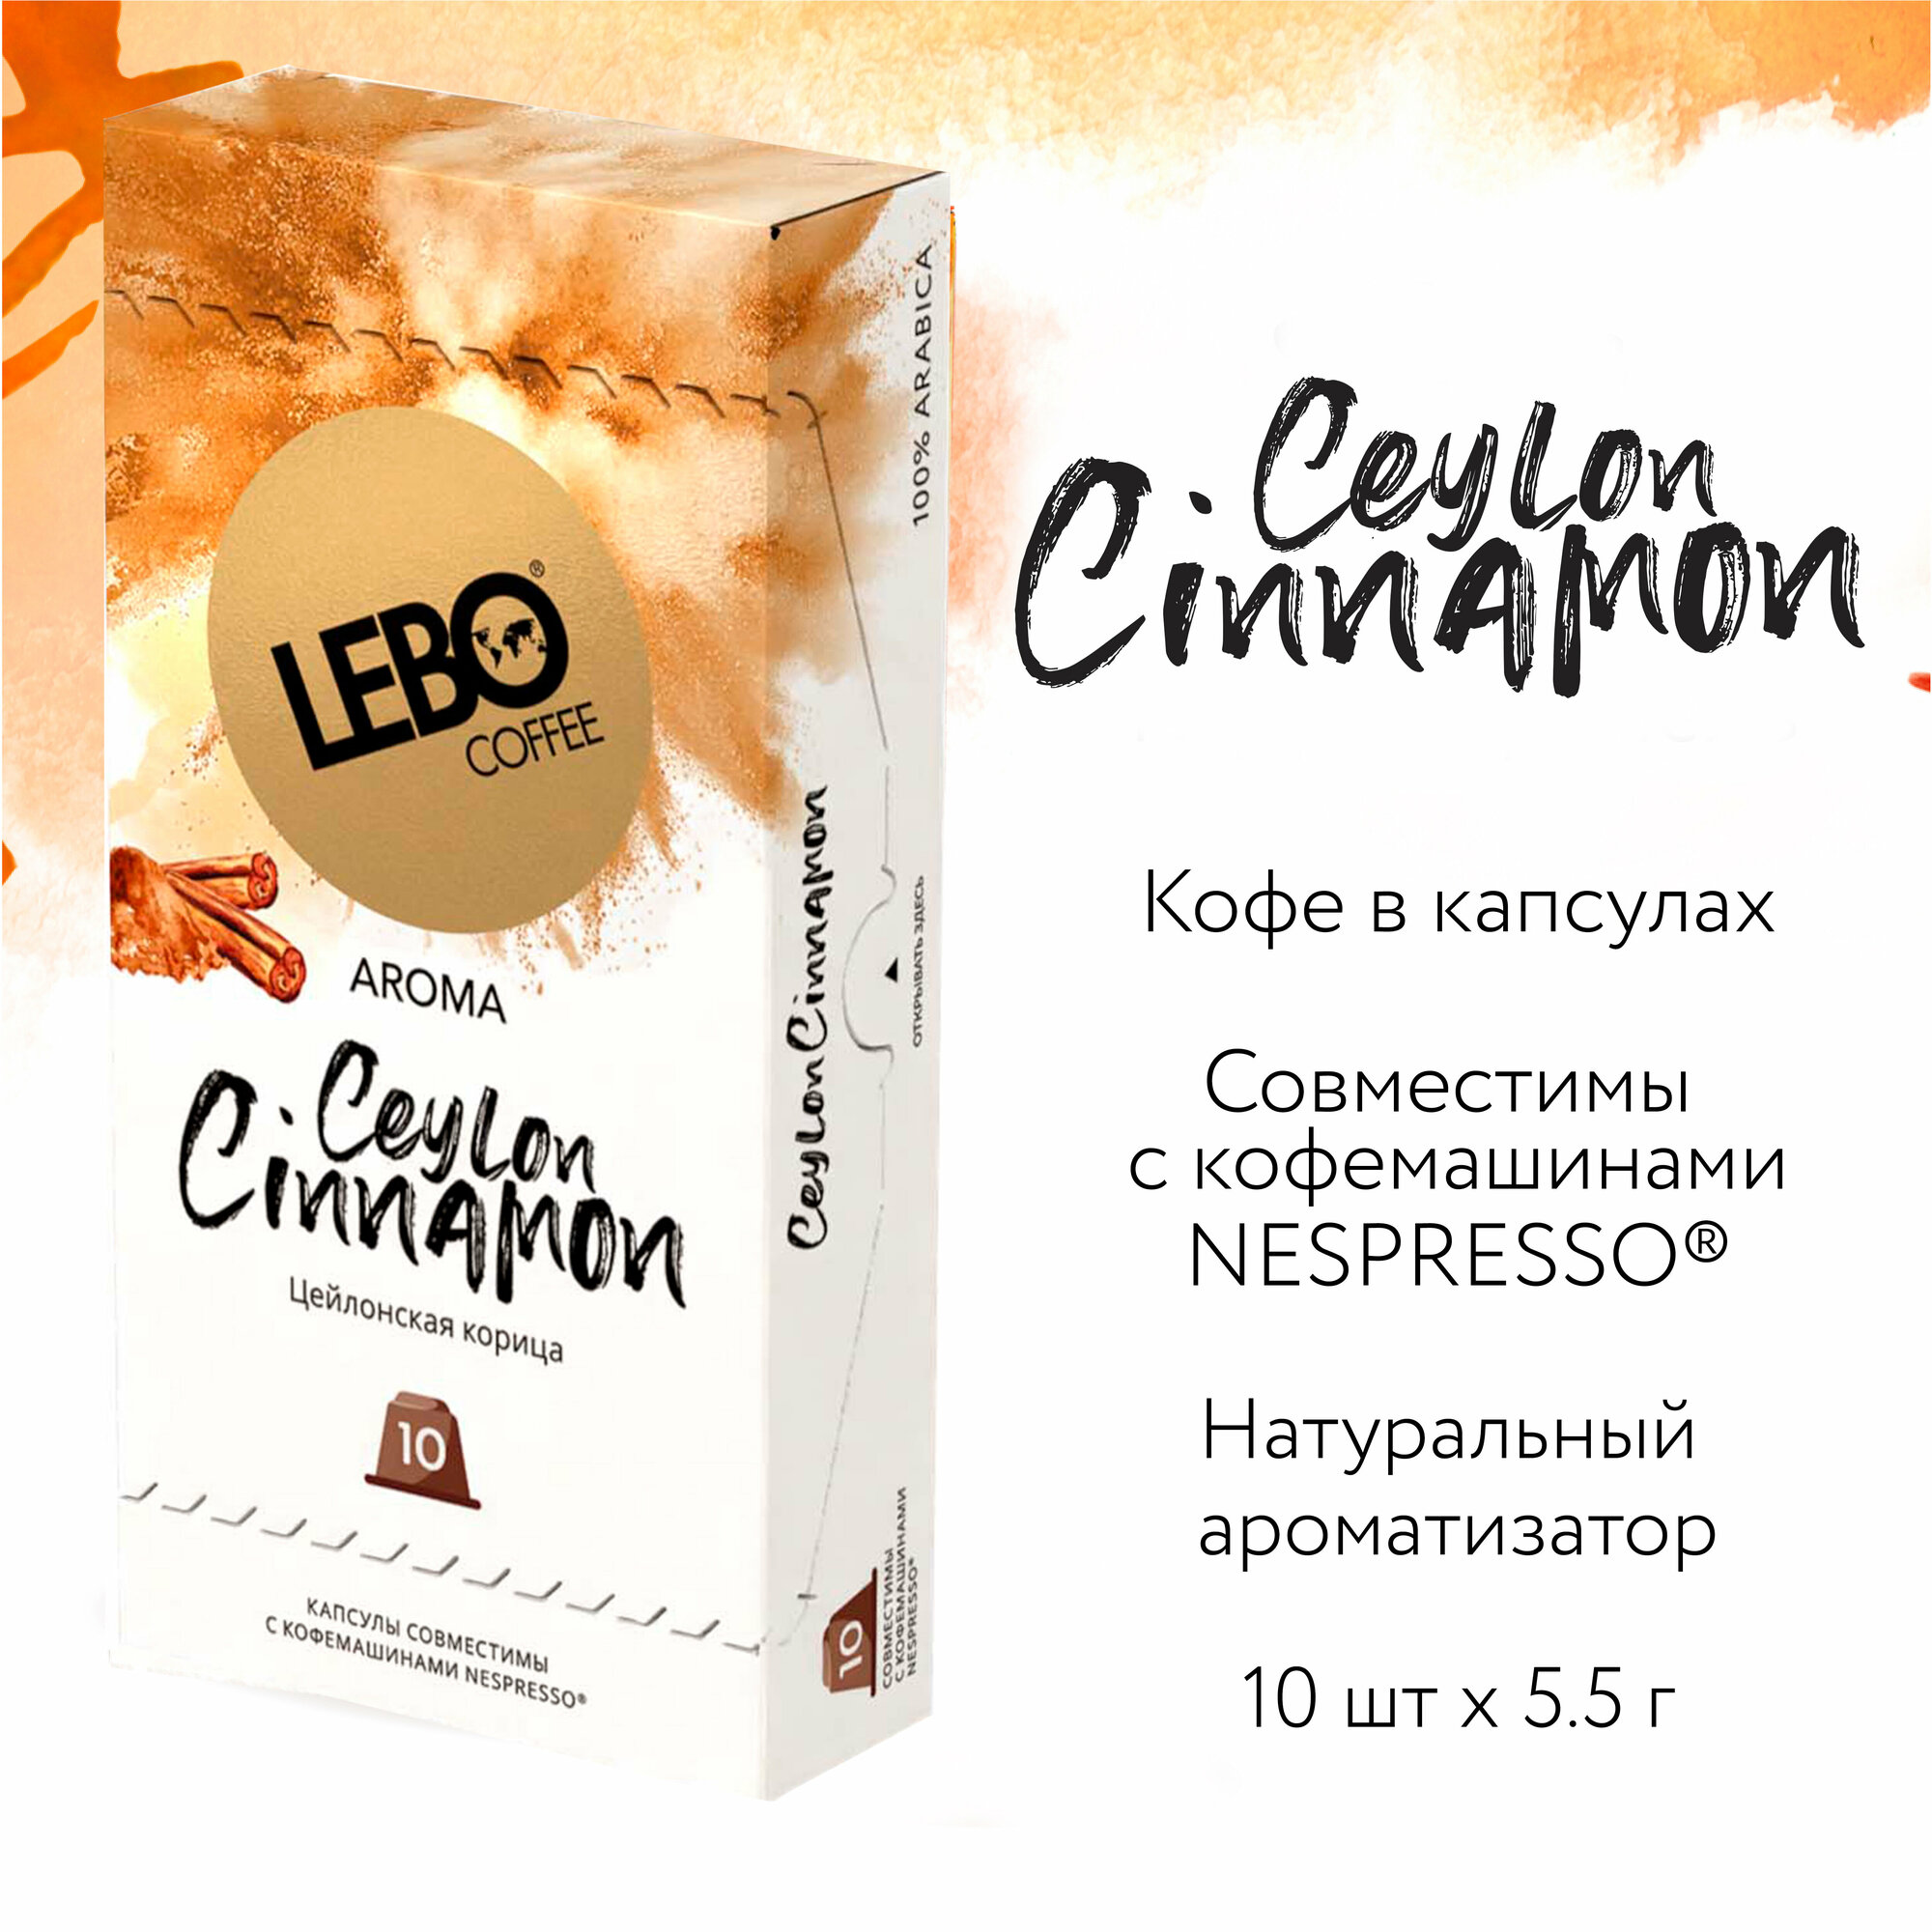 Кофе в капсулах LEBO CEYLON CINNAMON 55 г (10 шт.)